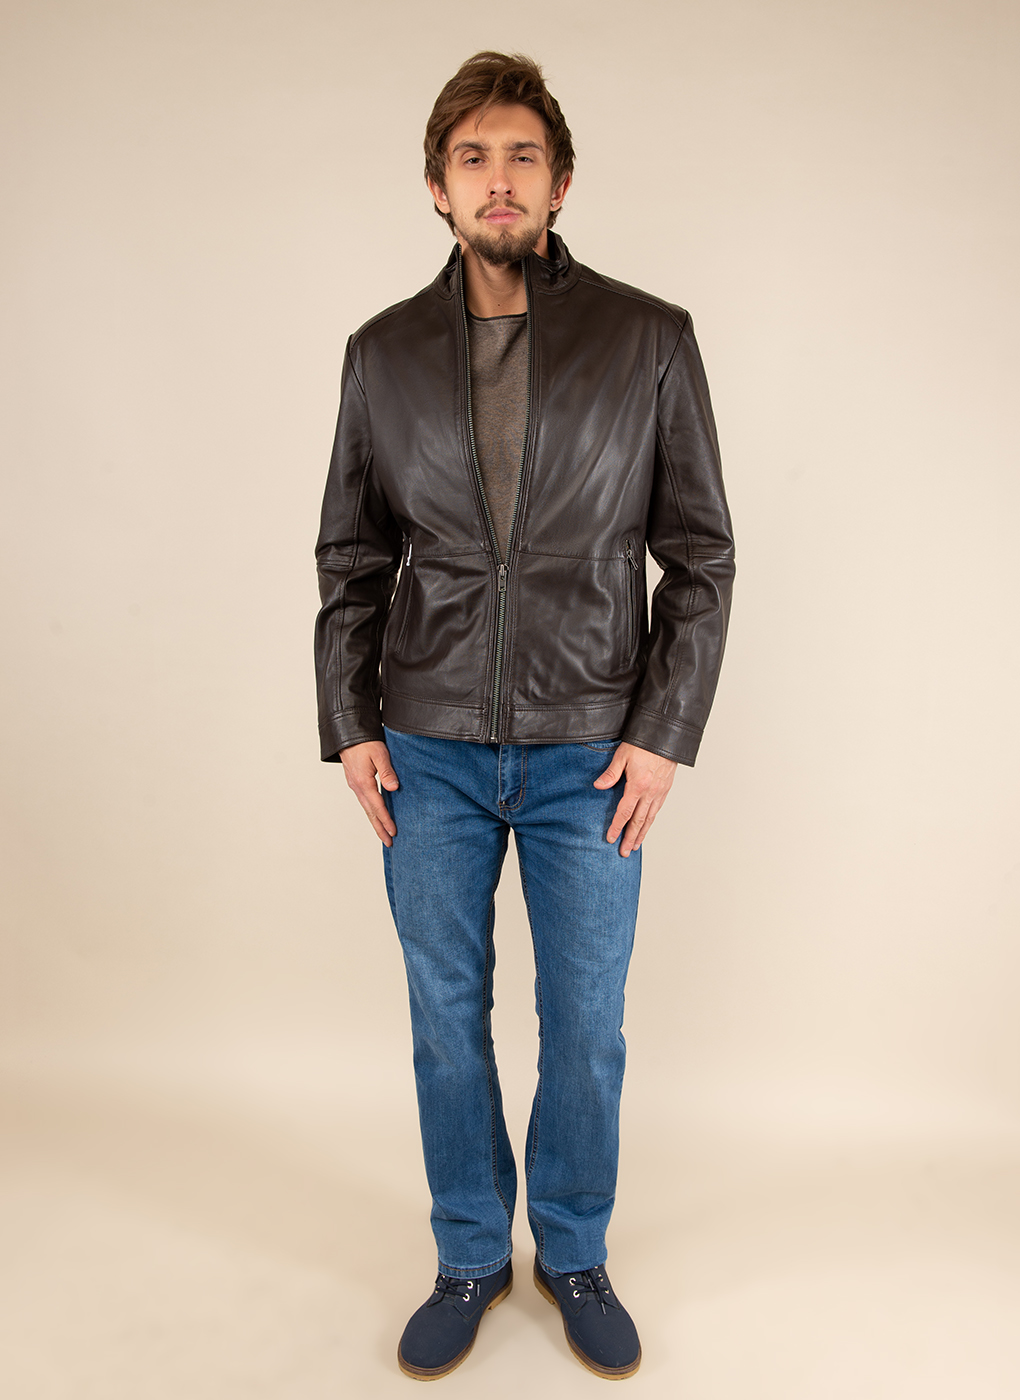 Кожаная куртка мужская Каляев 51795 коричневая 64 RU